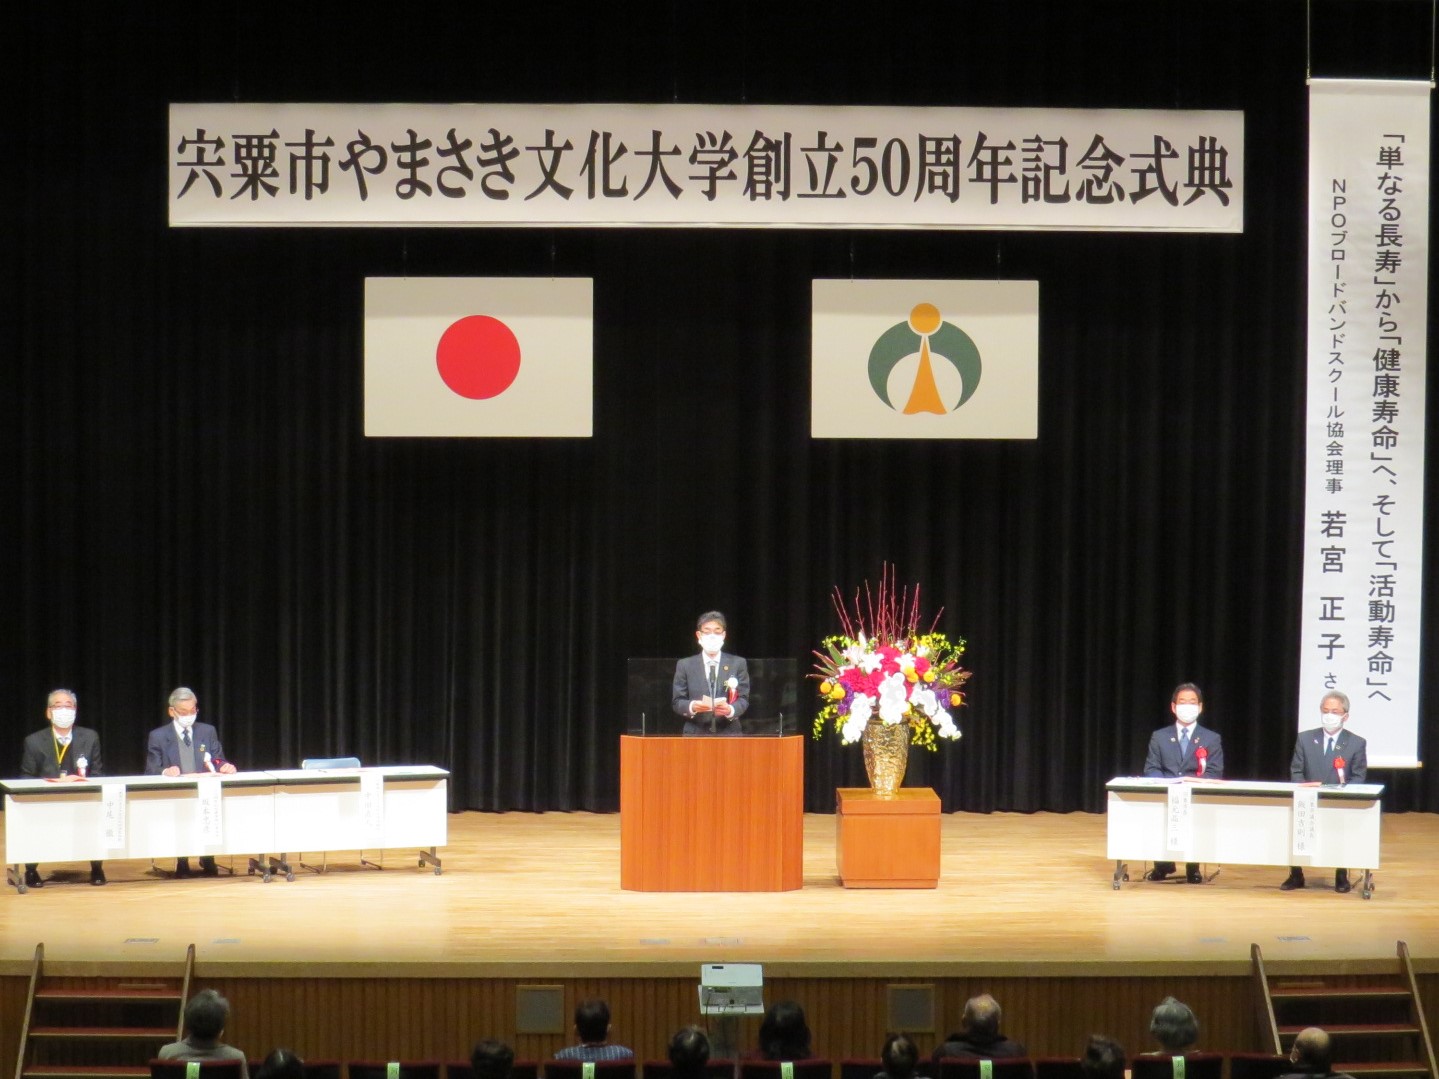 山崎文化会館で開催されたやまさき文化大学50周年記念式典の写真